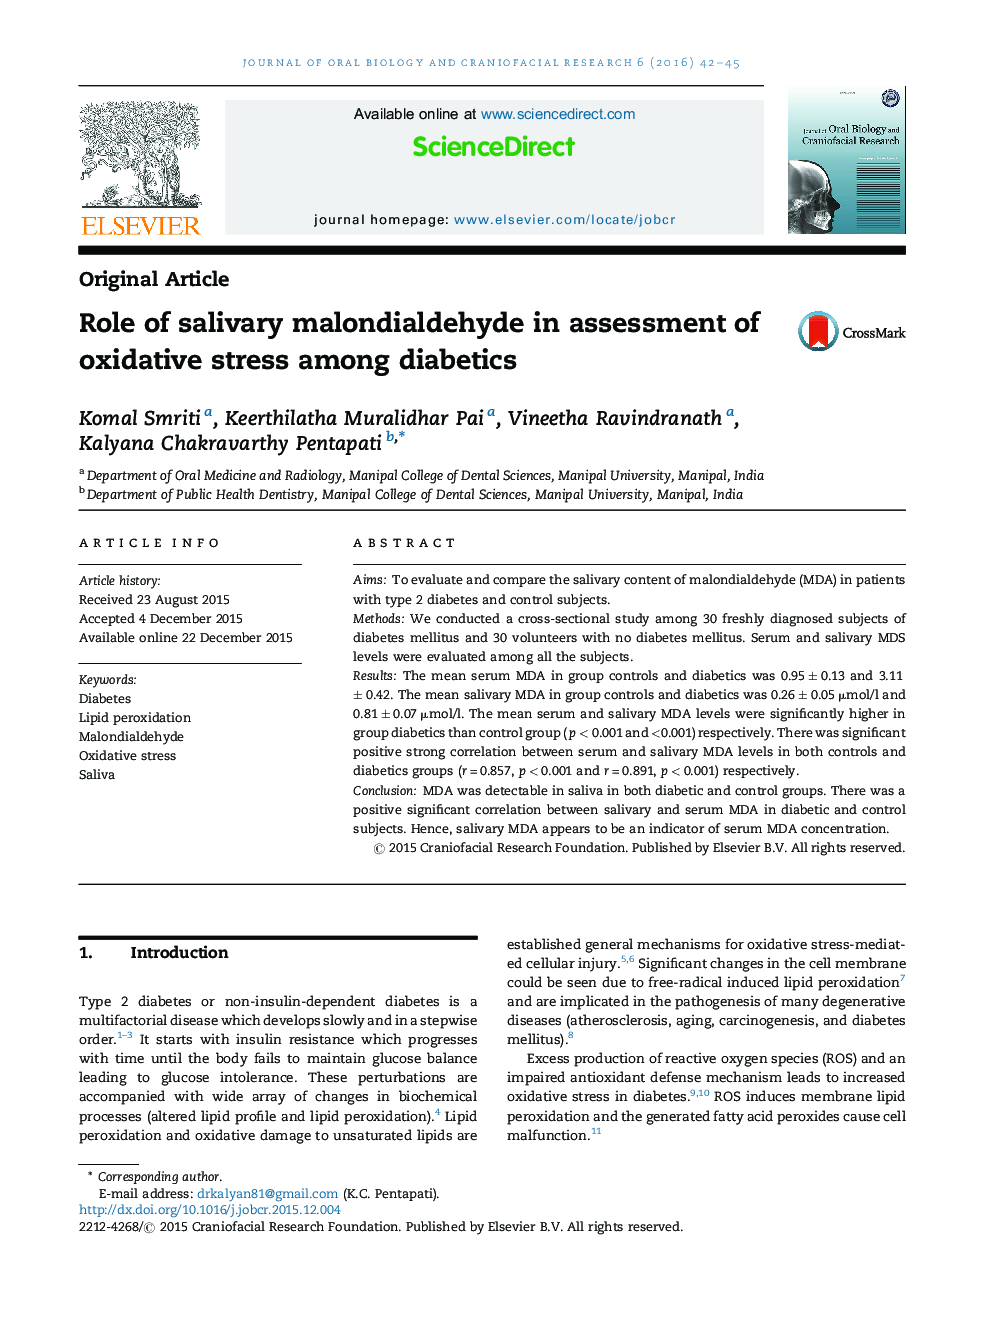 نقش مالون دی آلدئید بزاق در ارزیابی استرس اکسیداتیو در بیماران دیابتی